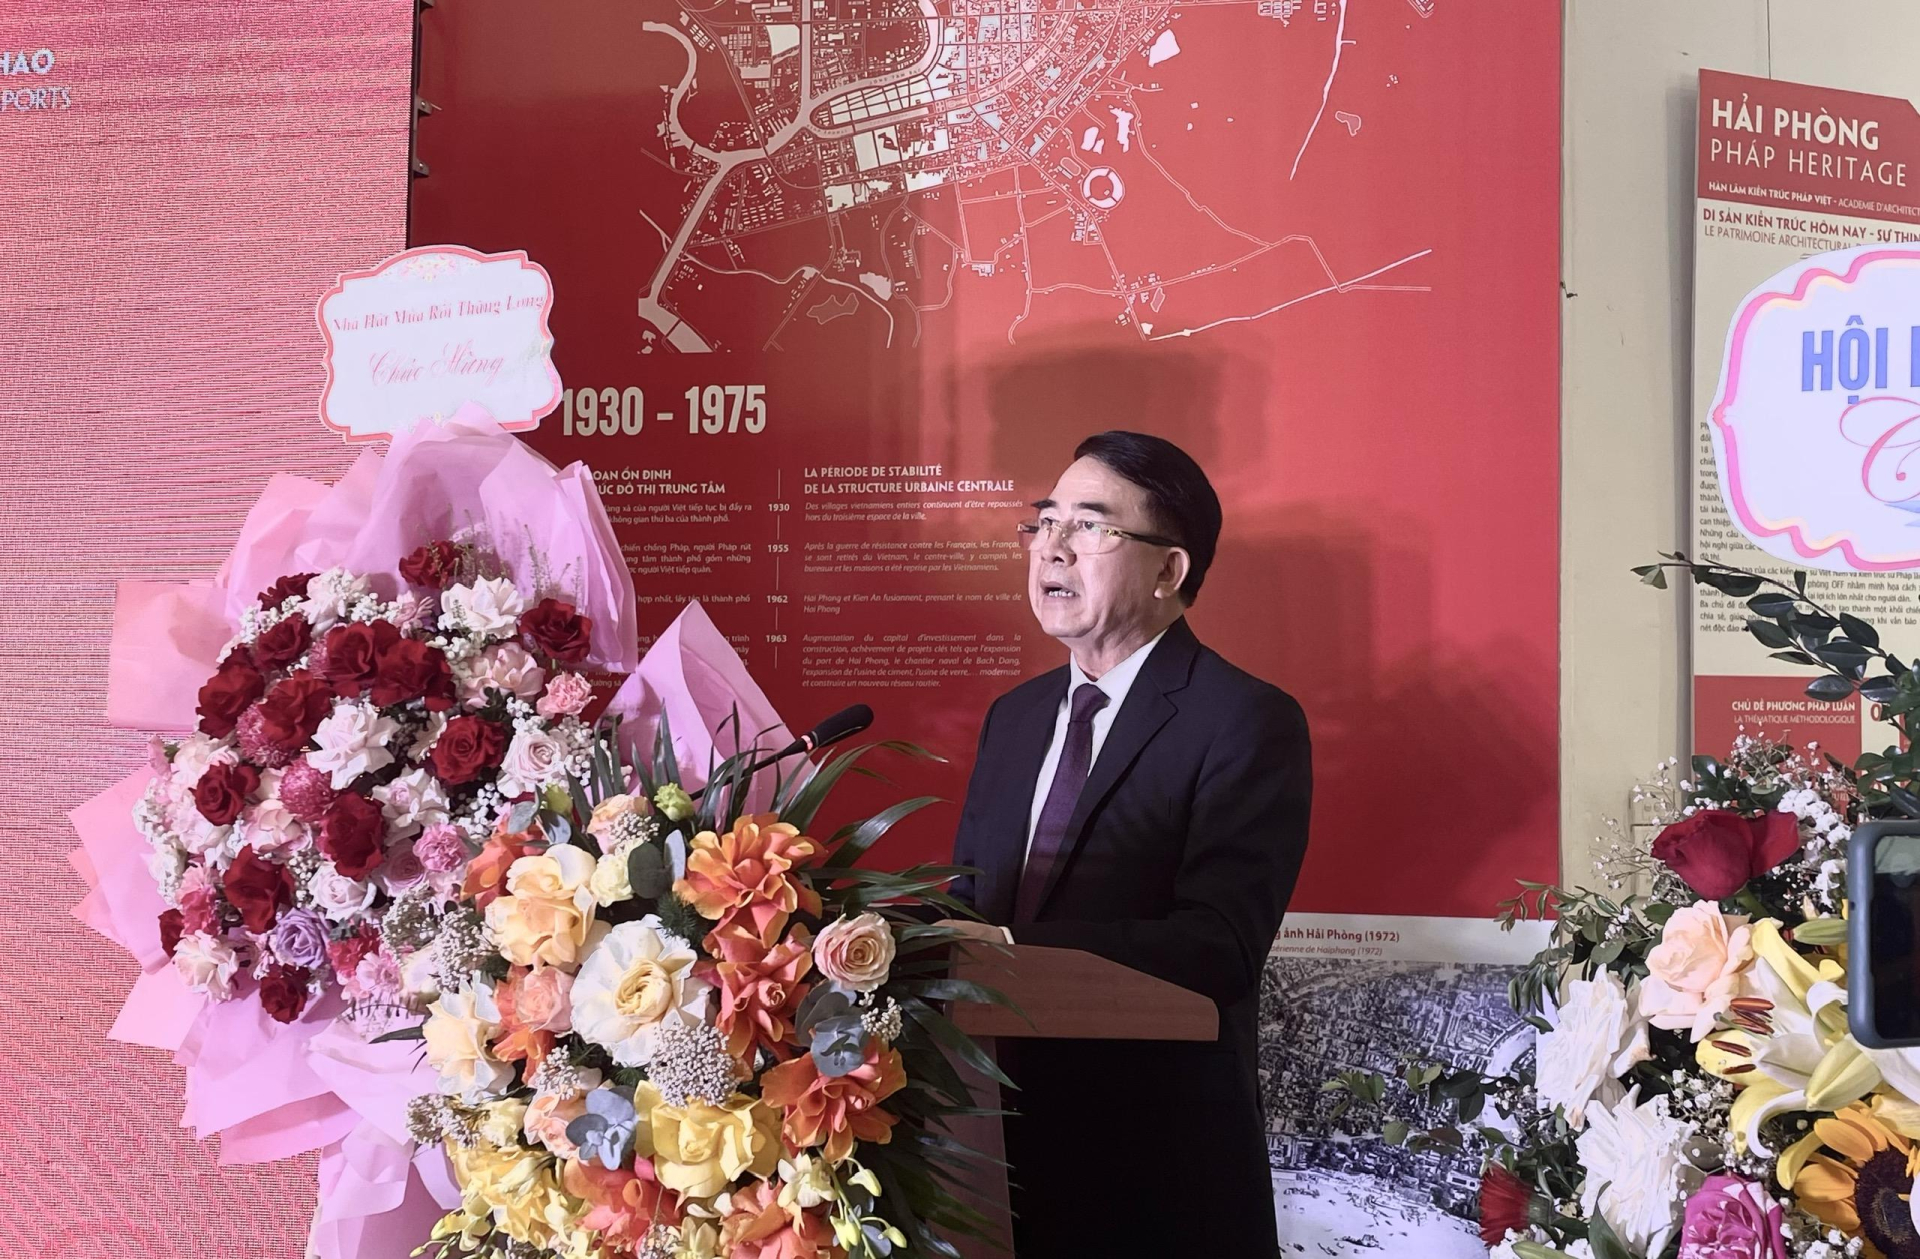 Phó Chủ tịch UBND thành phố Hải Phòng Lê Khắc Nam phát biểu tại Triển lãm.